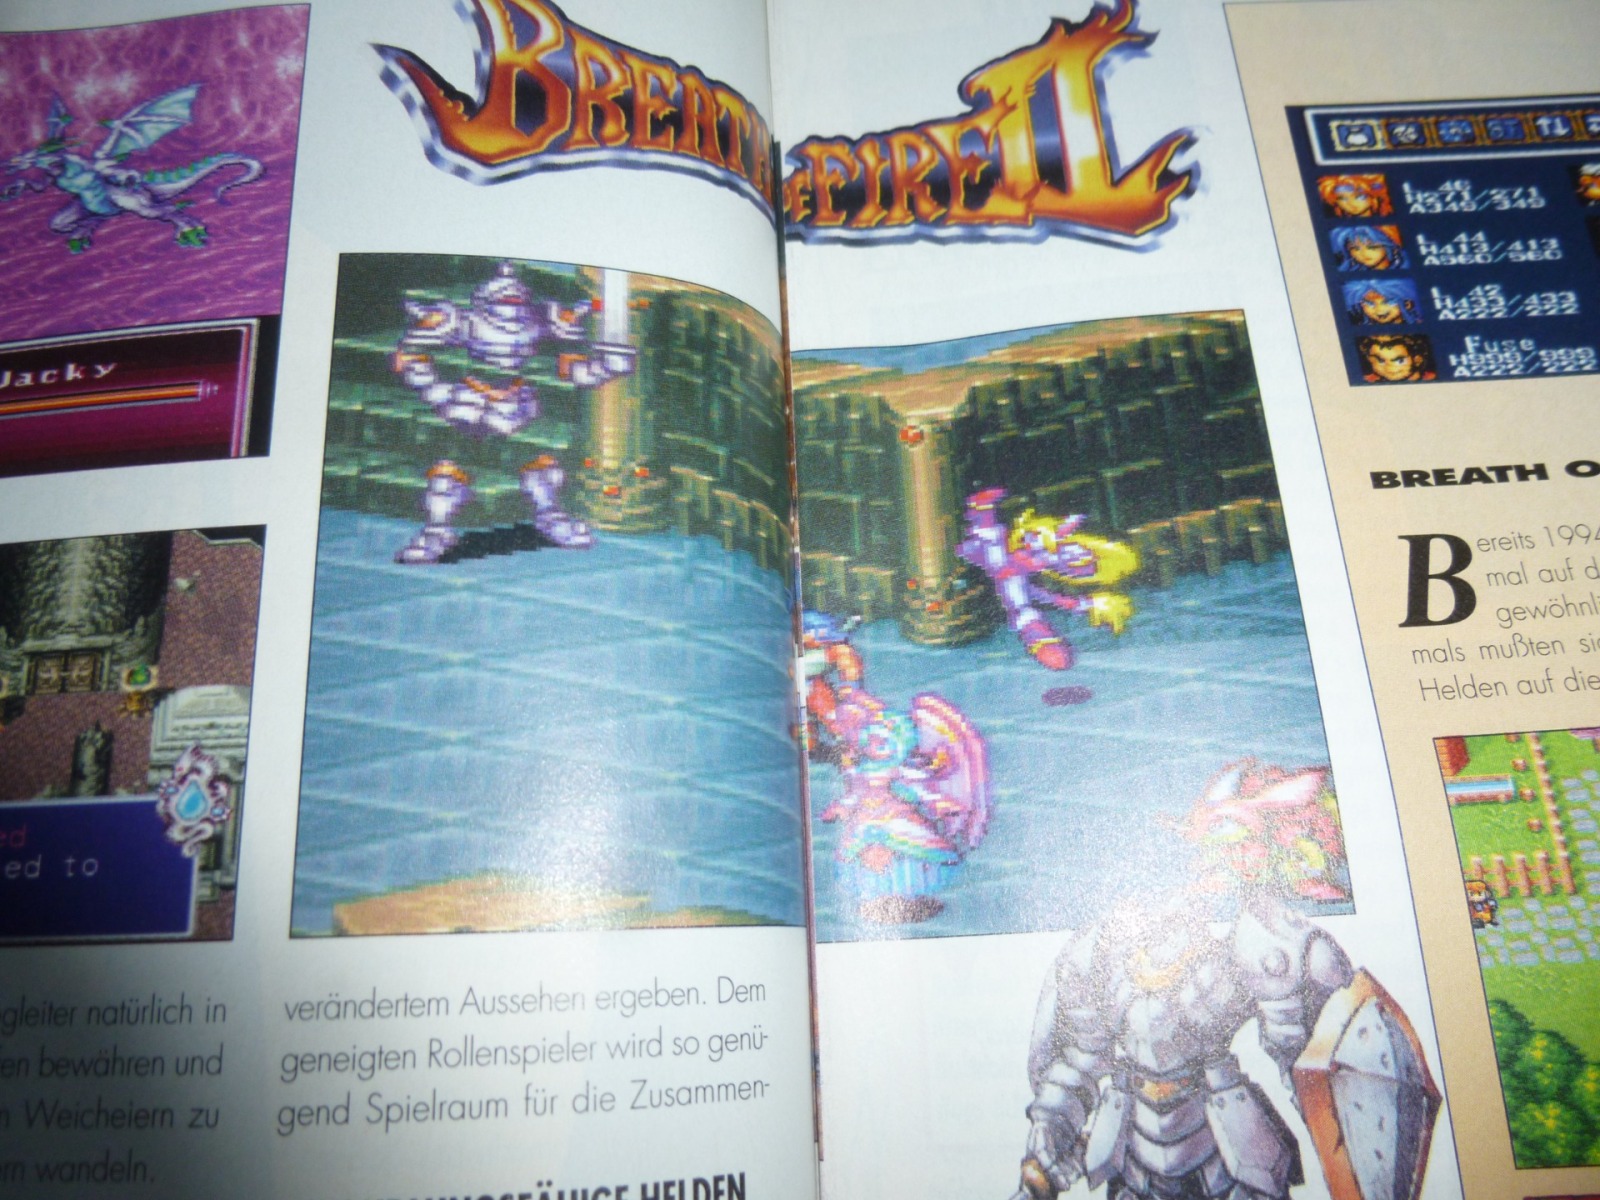 TOTAL Das unabhängige Magazin - 100 Nintendo - Ausgabe 4/96 1996 8